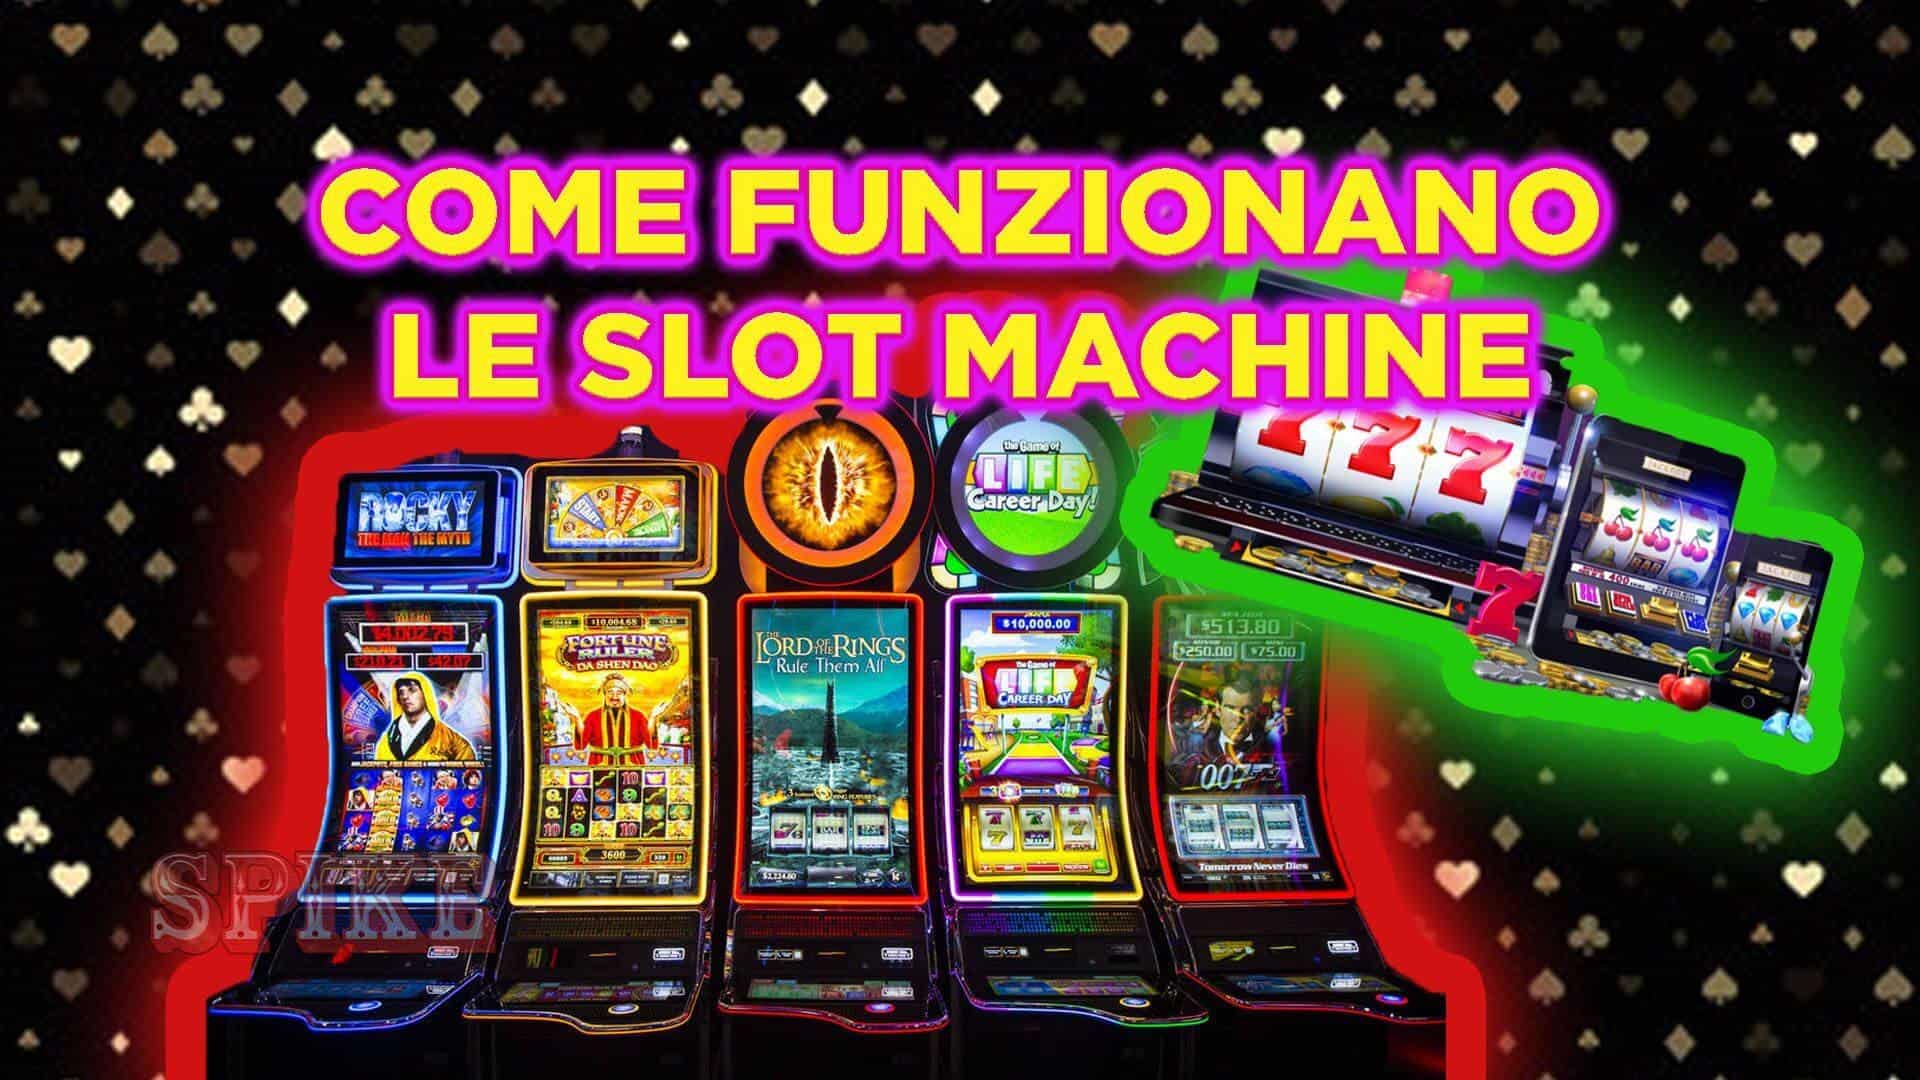 funzionalità speciali delle slot machine a cosa servono e quali sono le migliori